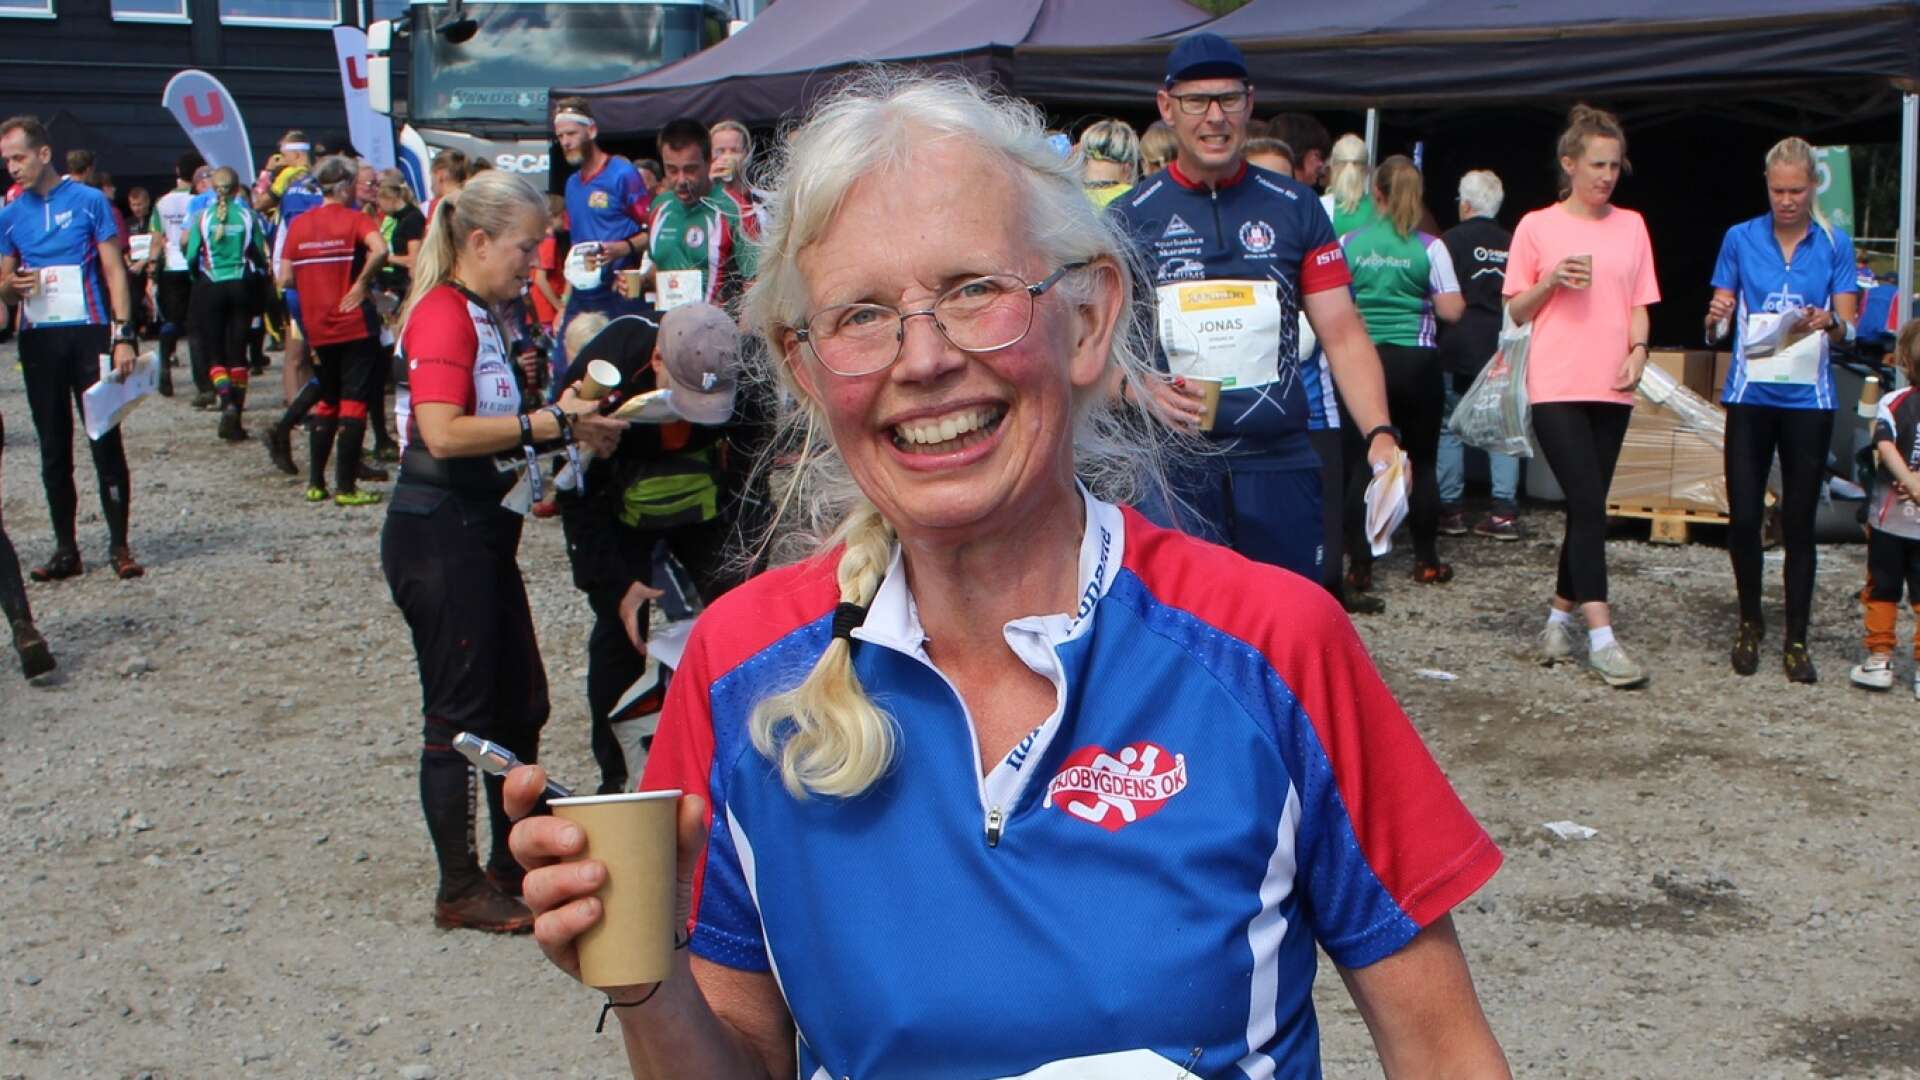 Hjobygdens Ingrid Schmiterlöw var strålande glad efter etapp 2 av O-ringen i Åre.